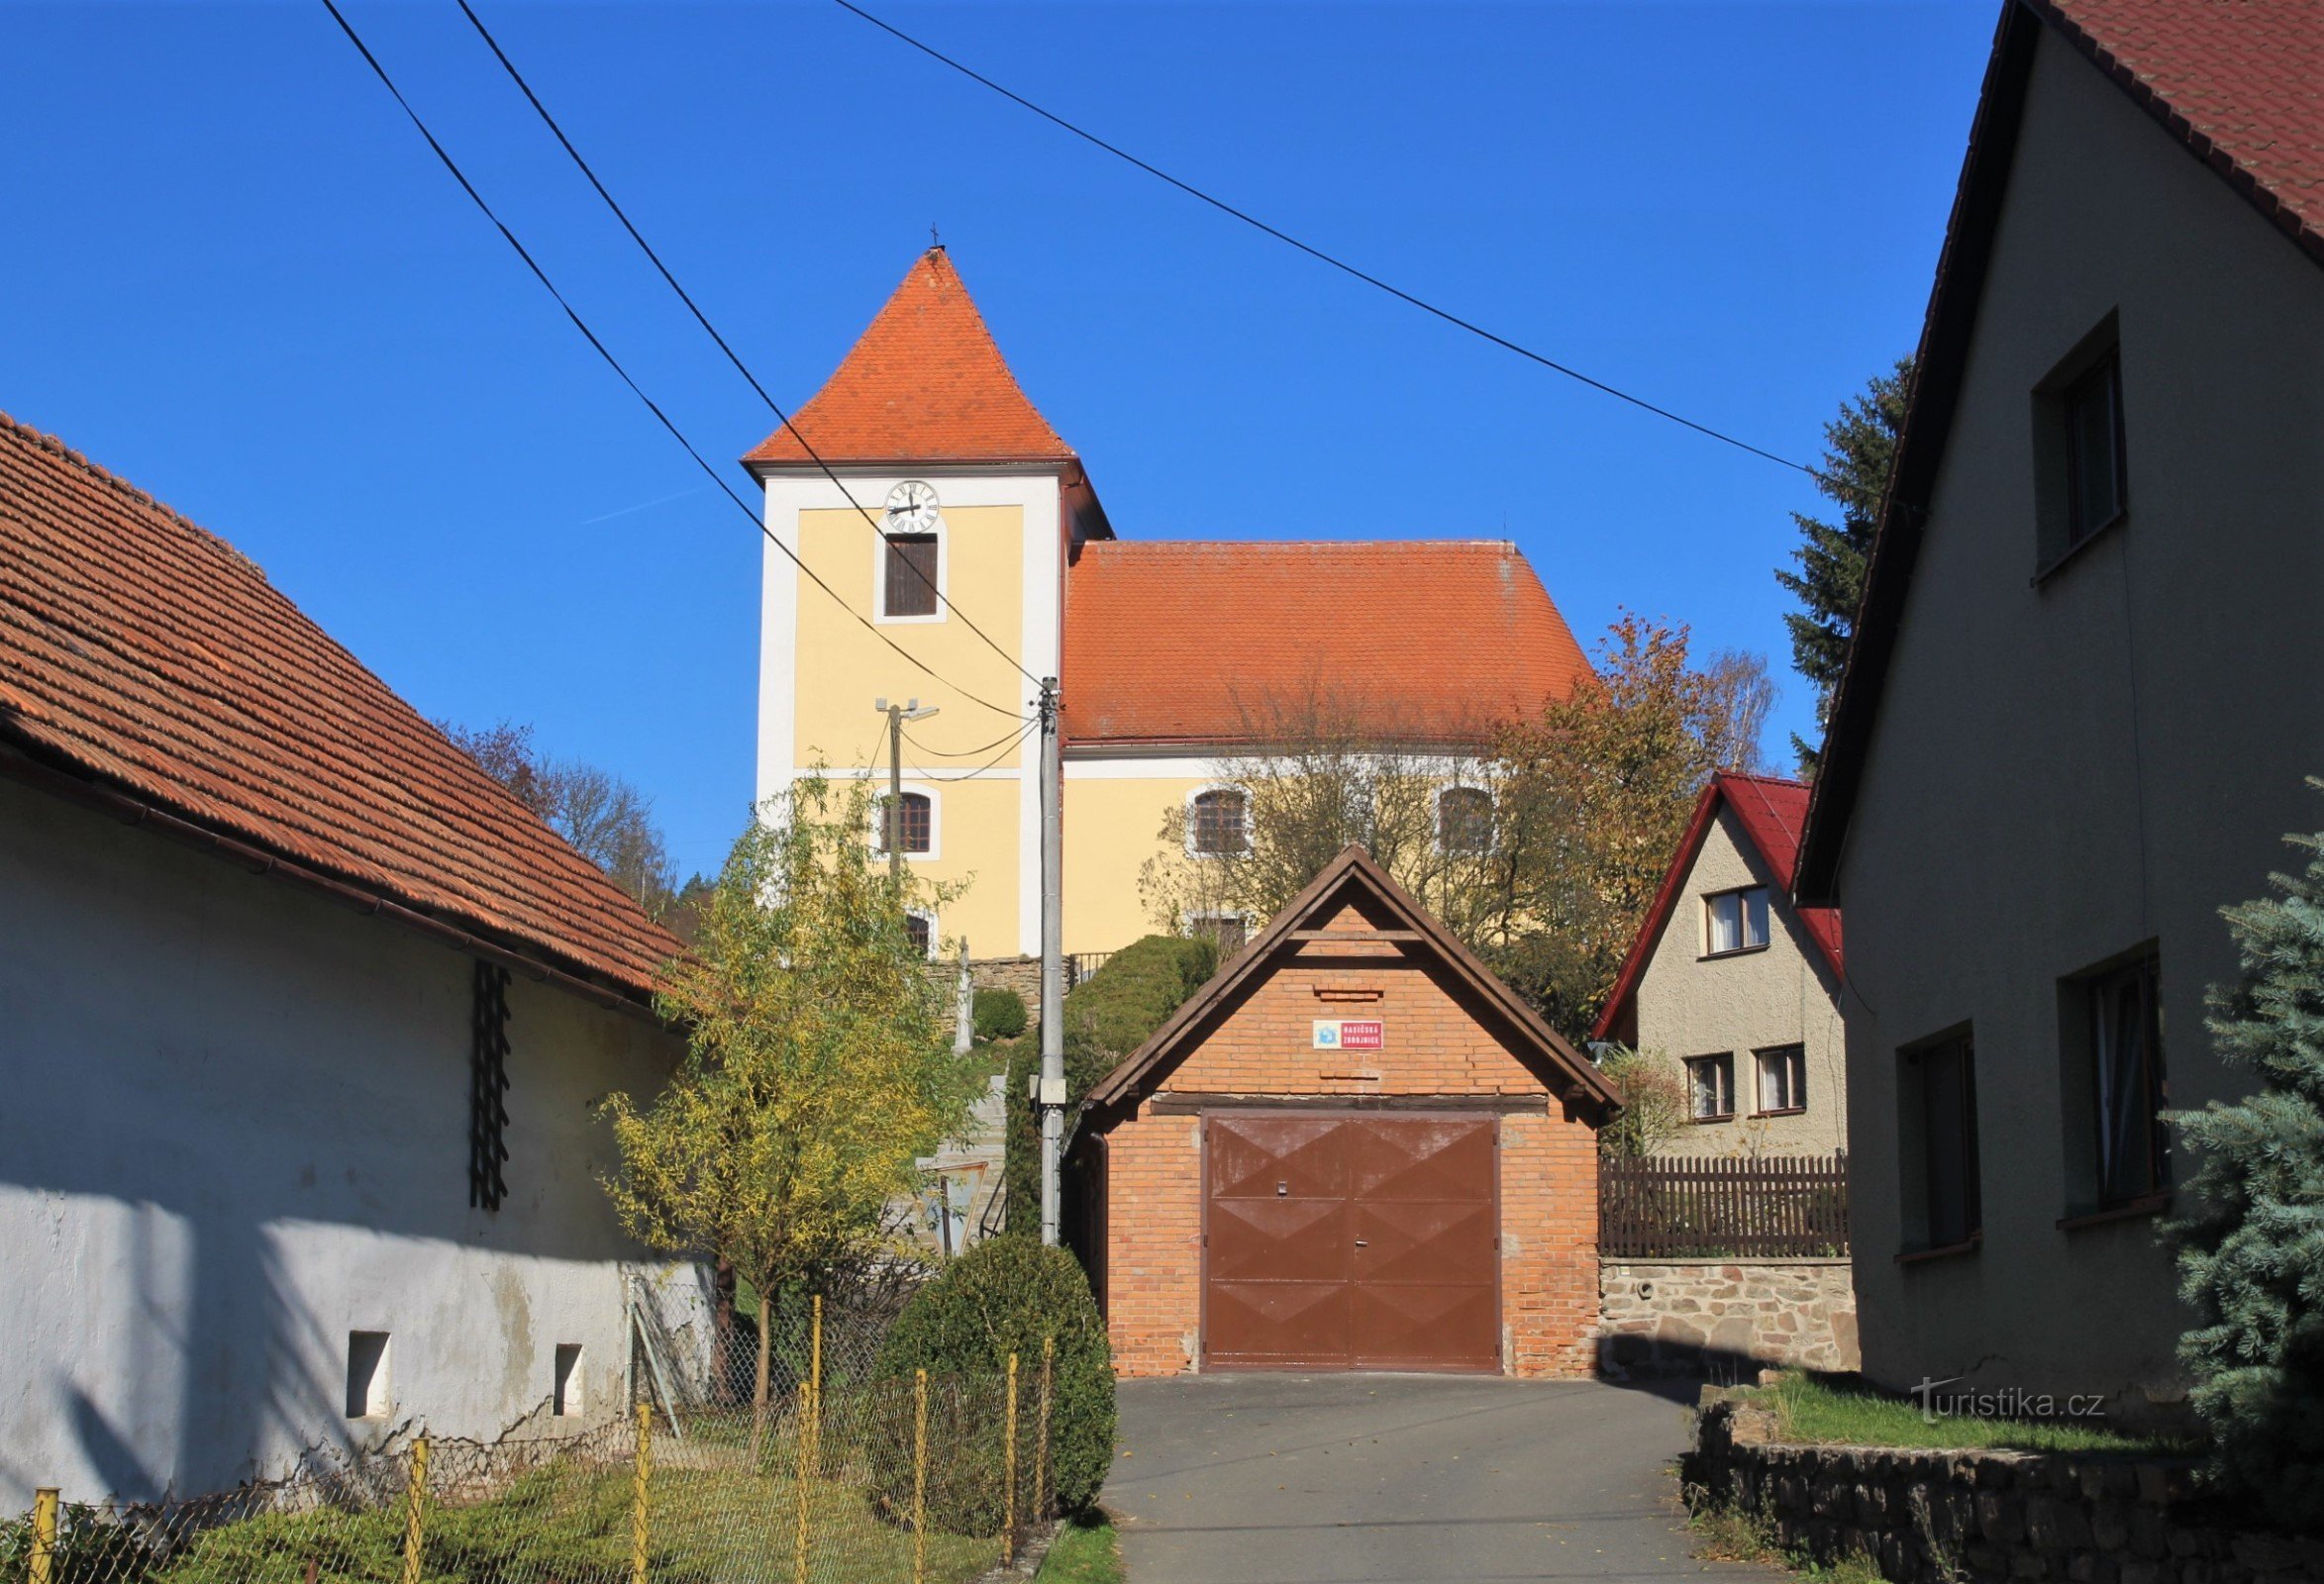 Widok kościoła od strony wsi